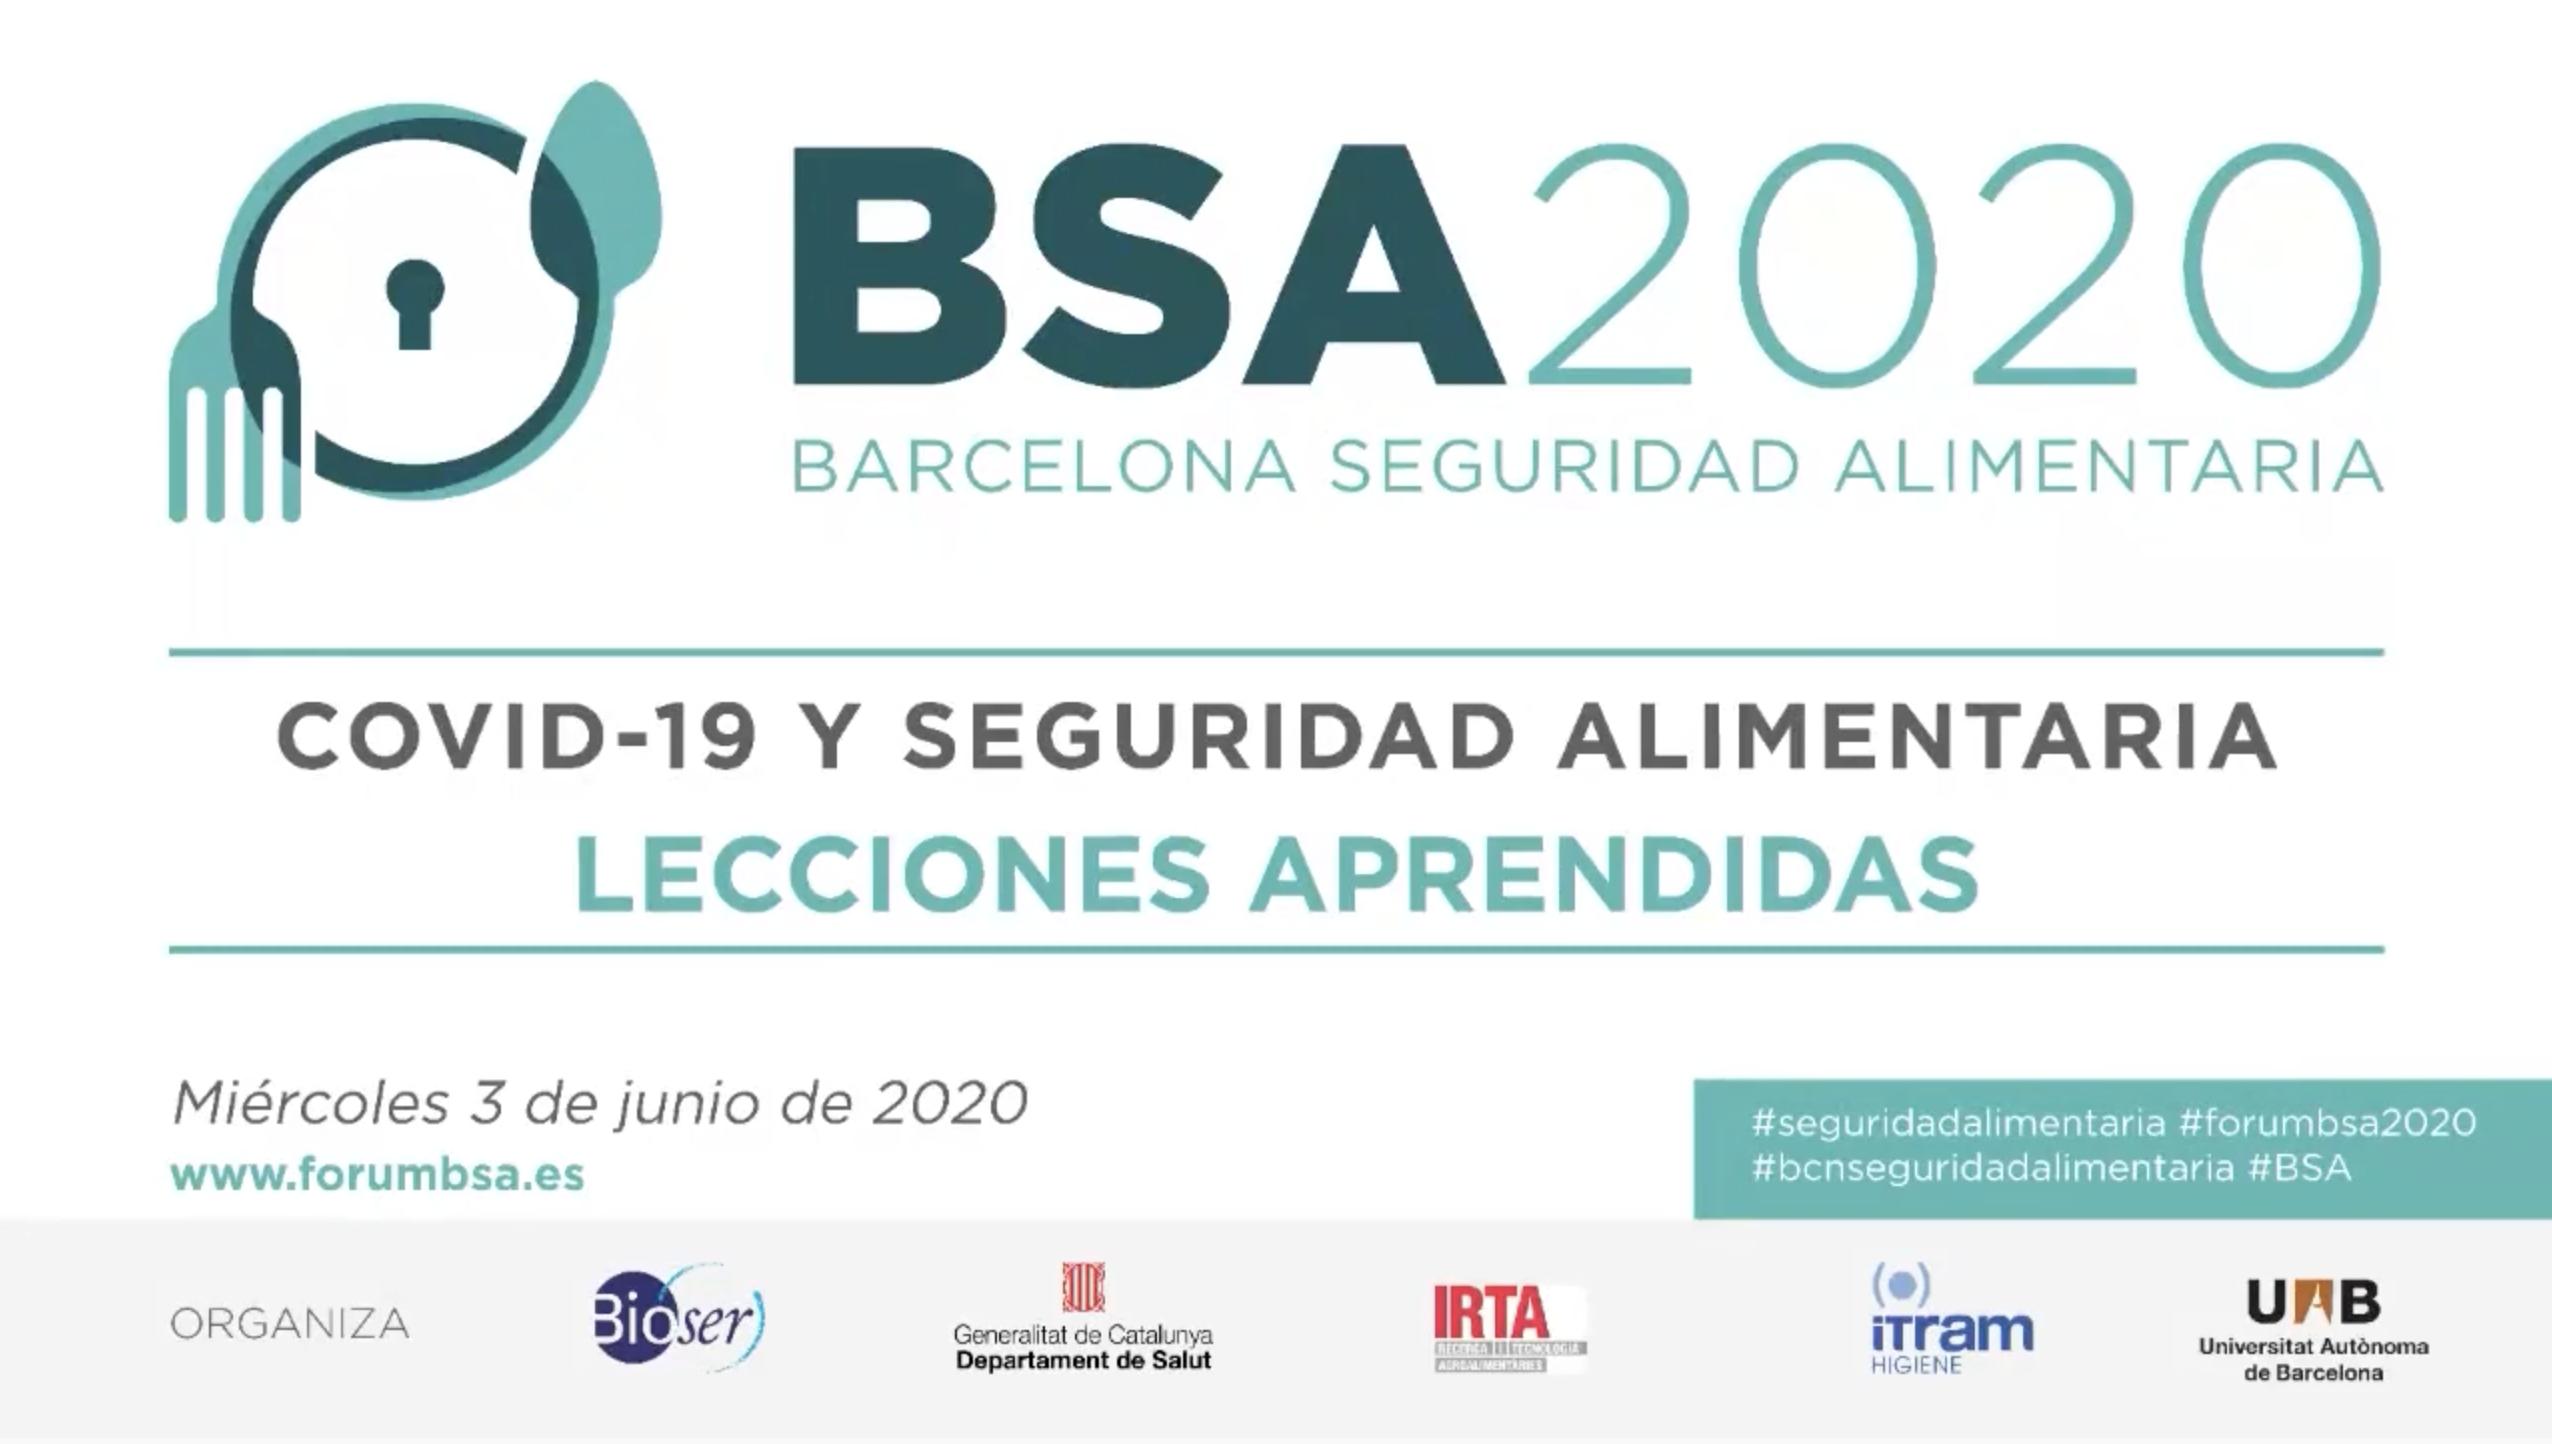 La segunda edición de Barcelona Seguridad Alimentaria se consolida como un entorno de referencia para hacer frente a las inquietudes del sector